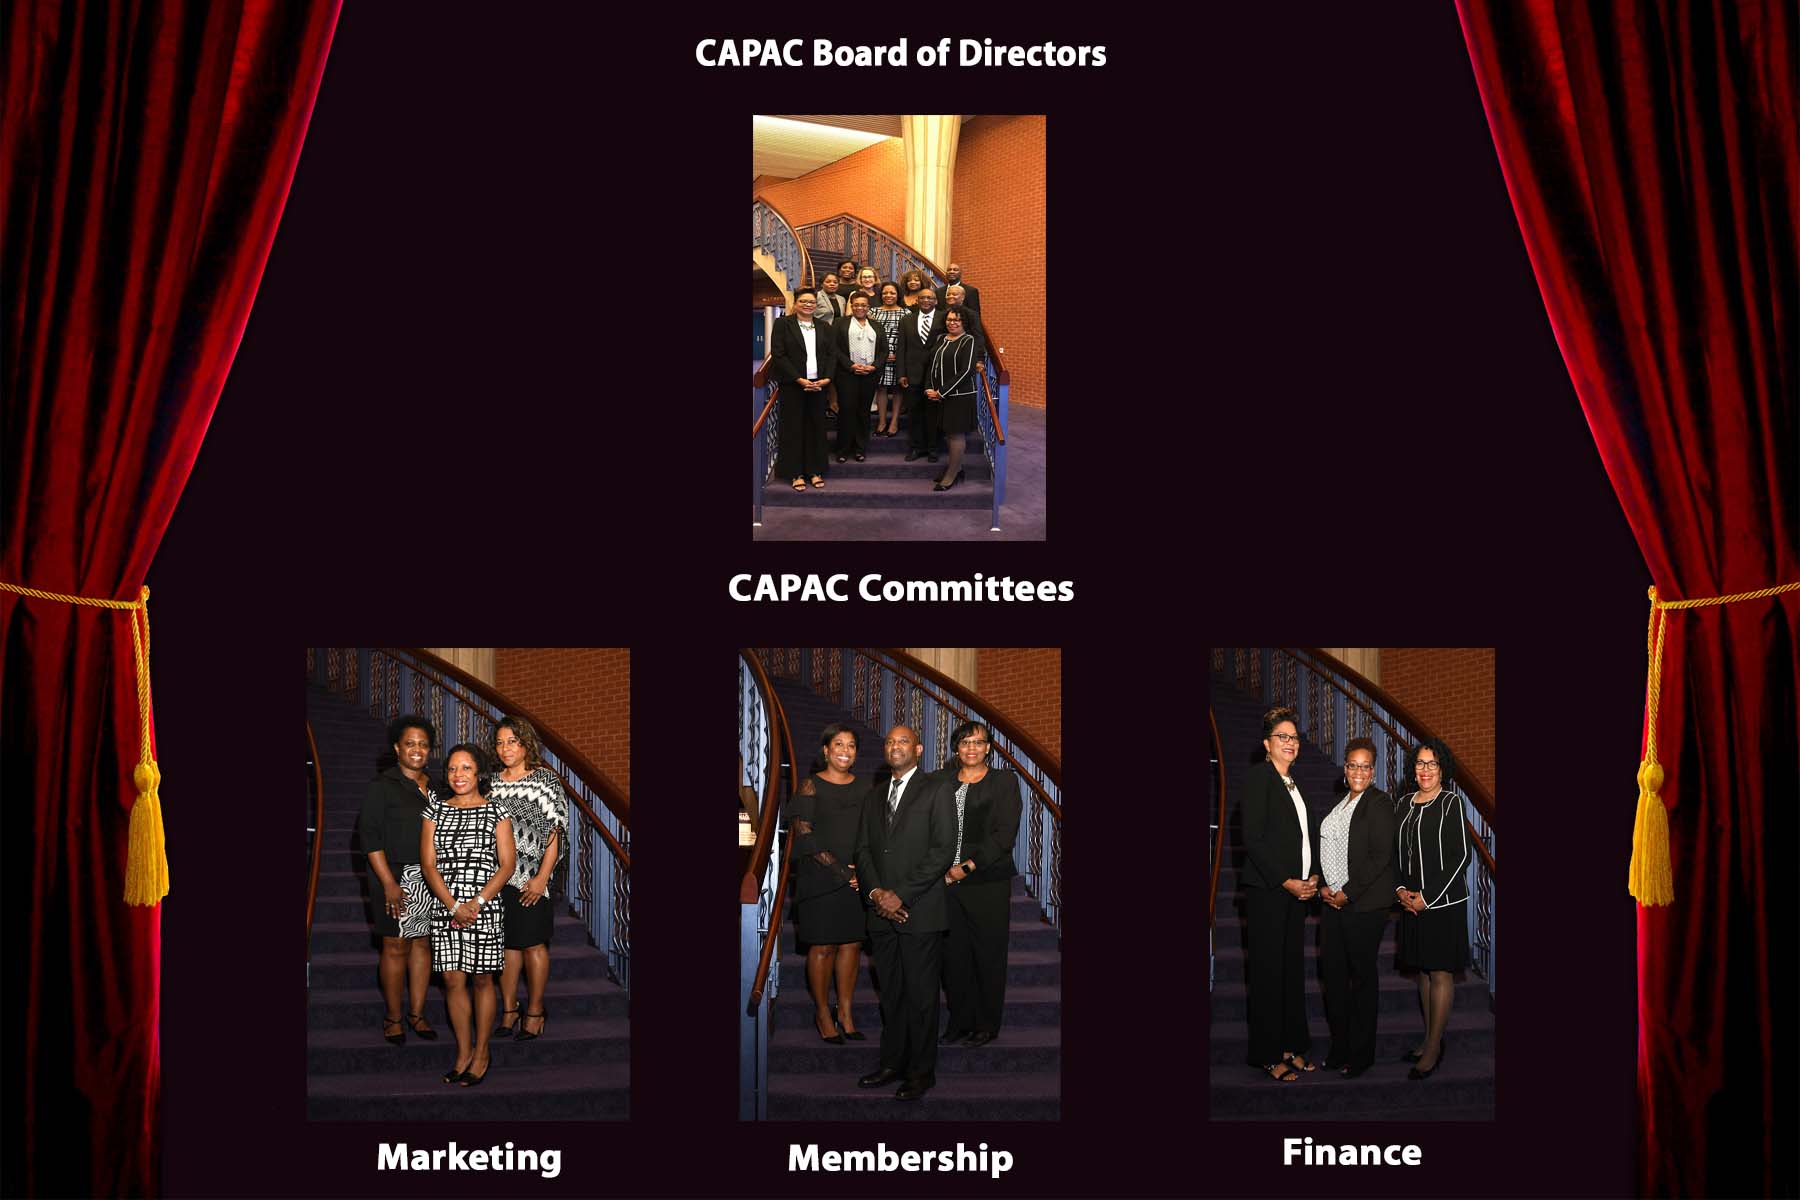 CAPAC's Strategic Planning Team